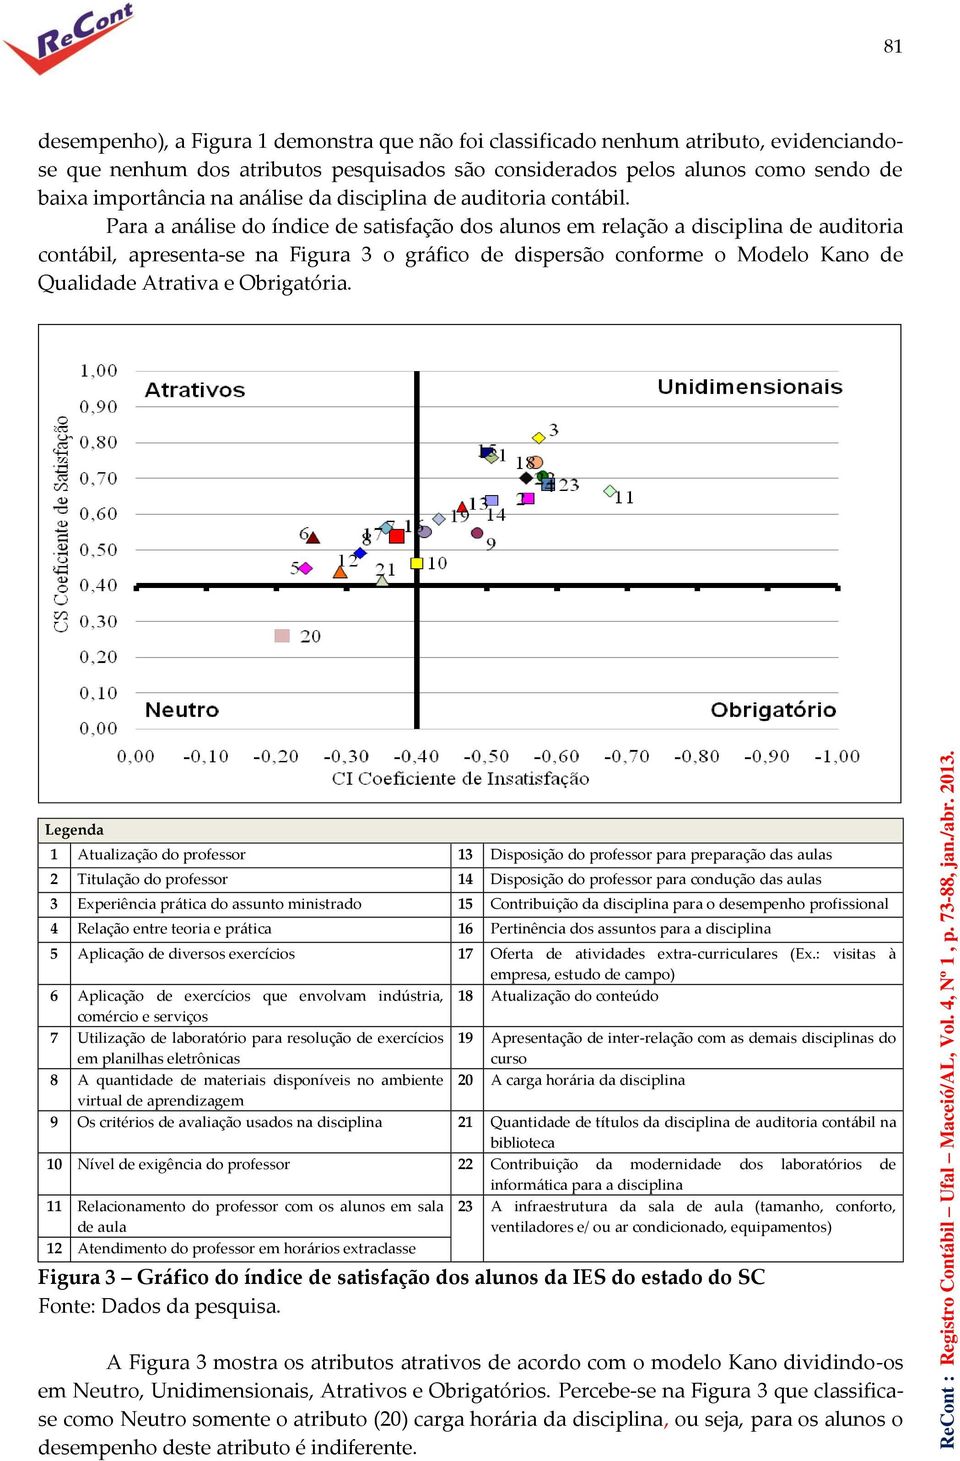 Para a análise do índice de satisfação dos alunos em relação a disciplina de auditoria contábil, apresenta-se na Figura 3 o gráfico de dispersão conforme o Modelo Kano de Qualidade Atrativa e